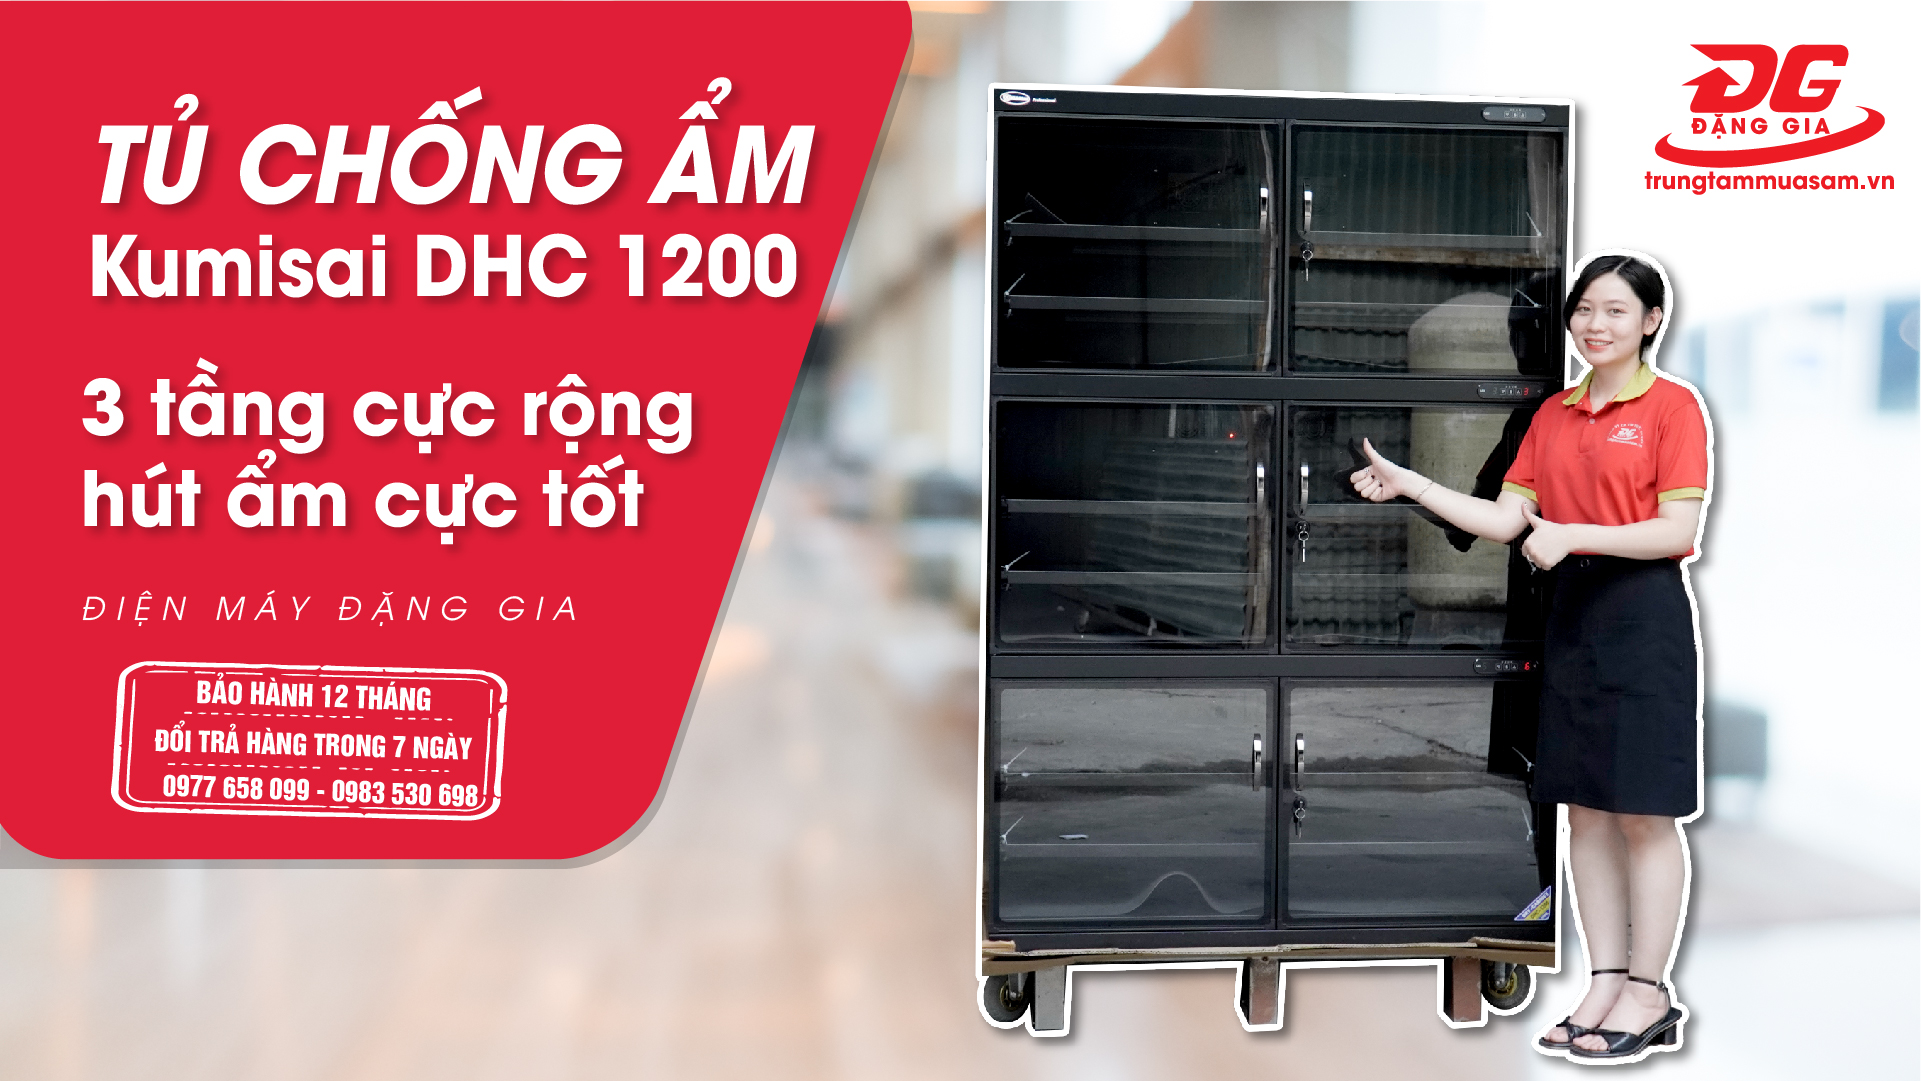 Tủ chống ẩm 1200L KUMISAI DHC 1200 - 3 khoang cực rộng, hút ẩm cực tốt